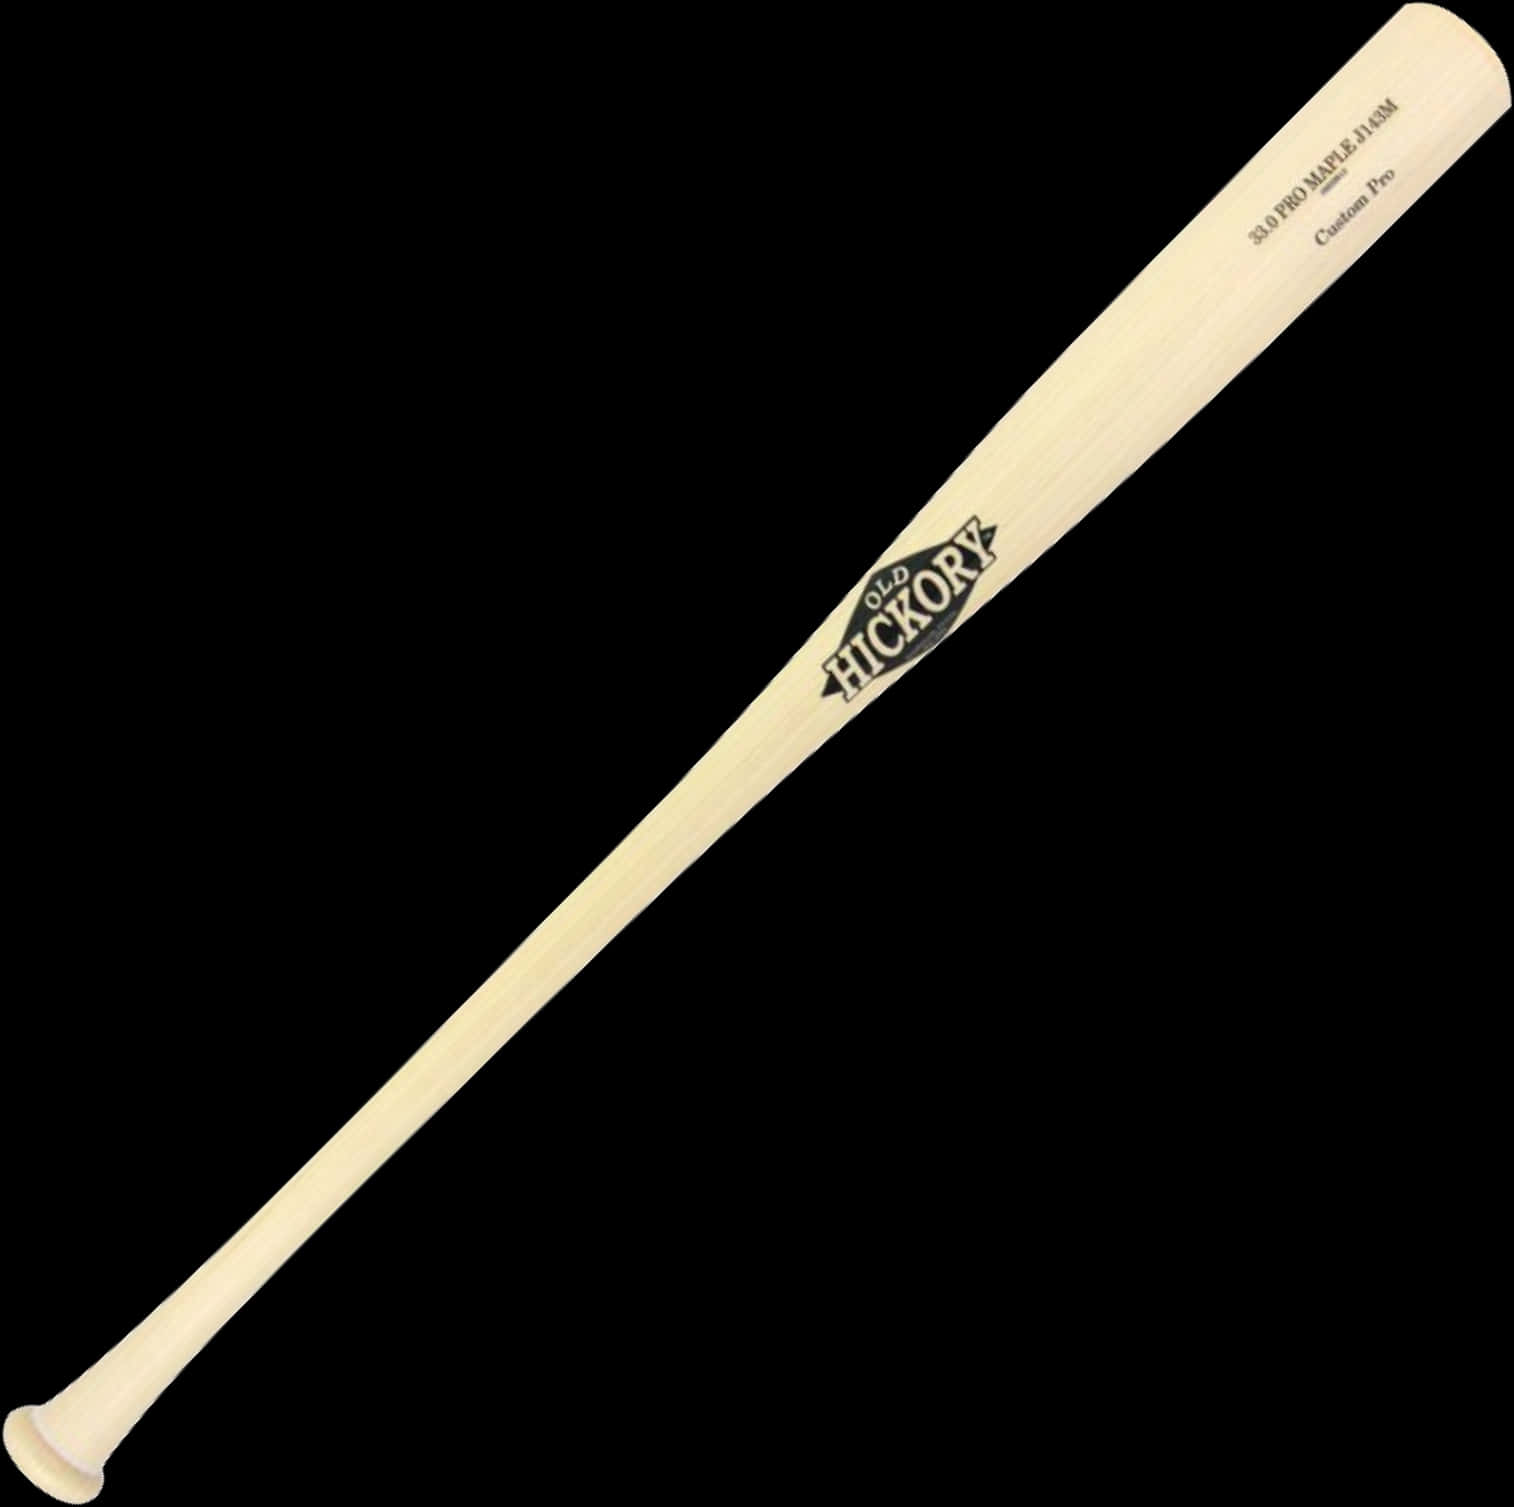 Hickory Wood Baseball Bat PNG